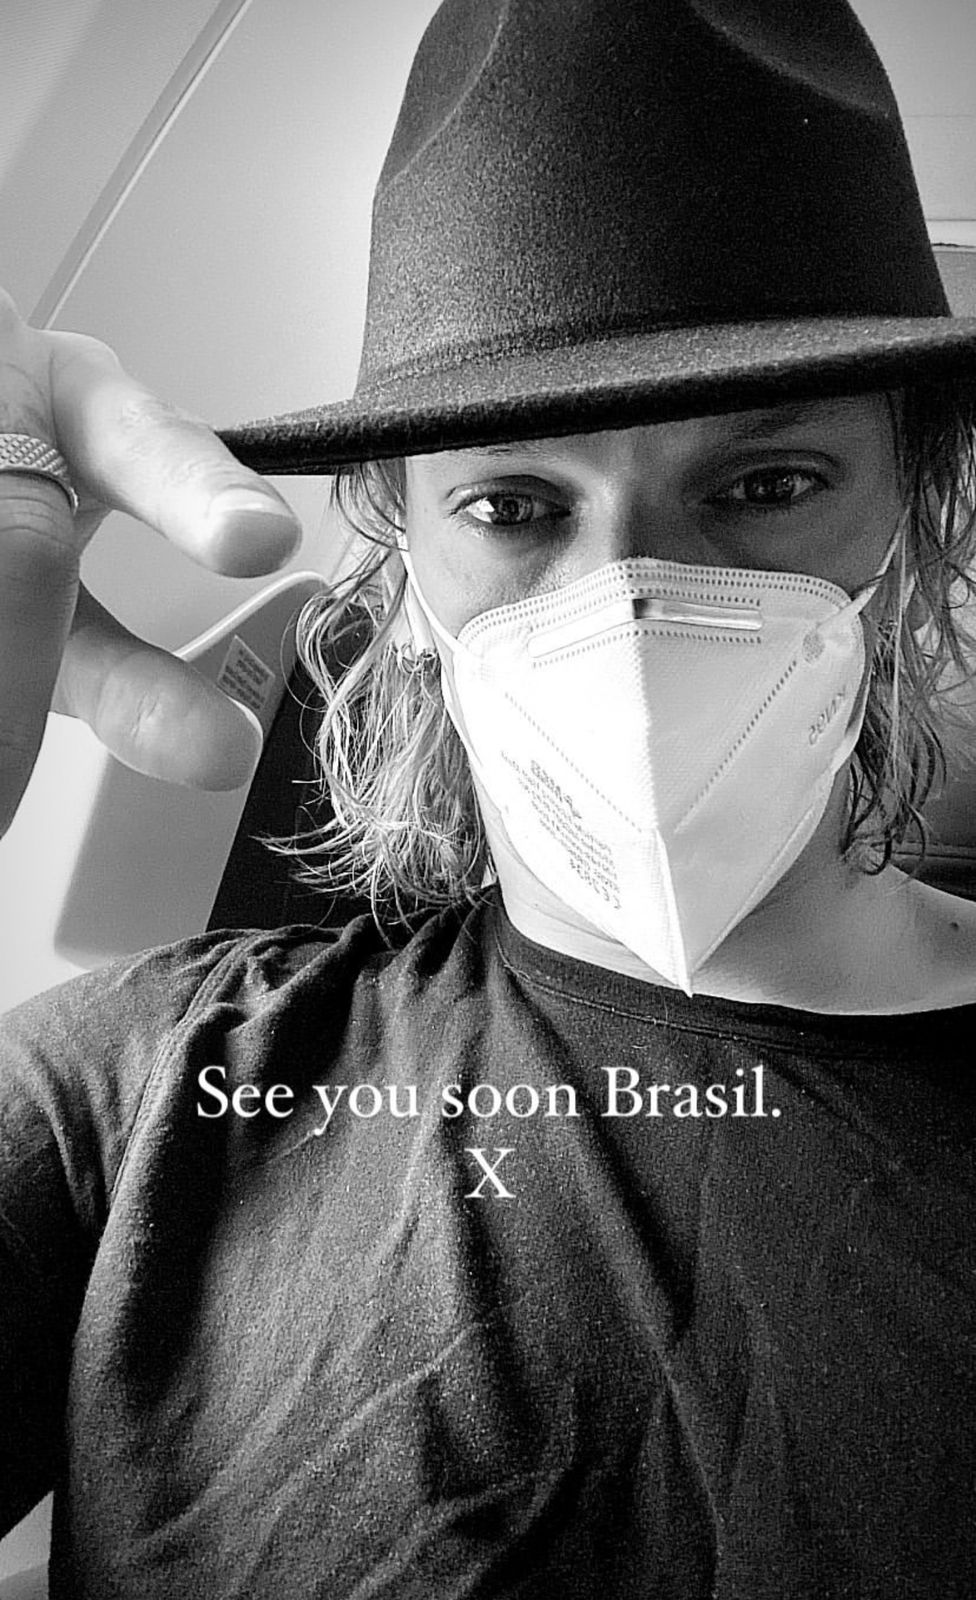 Ator de 'Stranger Things' está confirmado em evento da série no Brasil